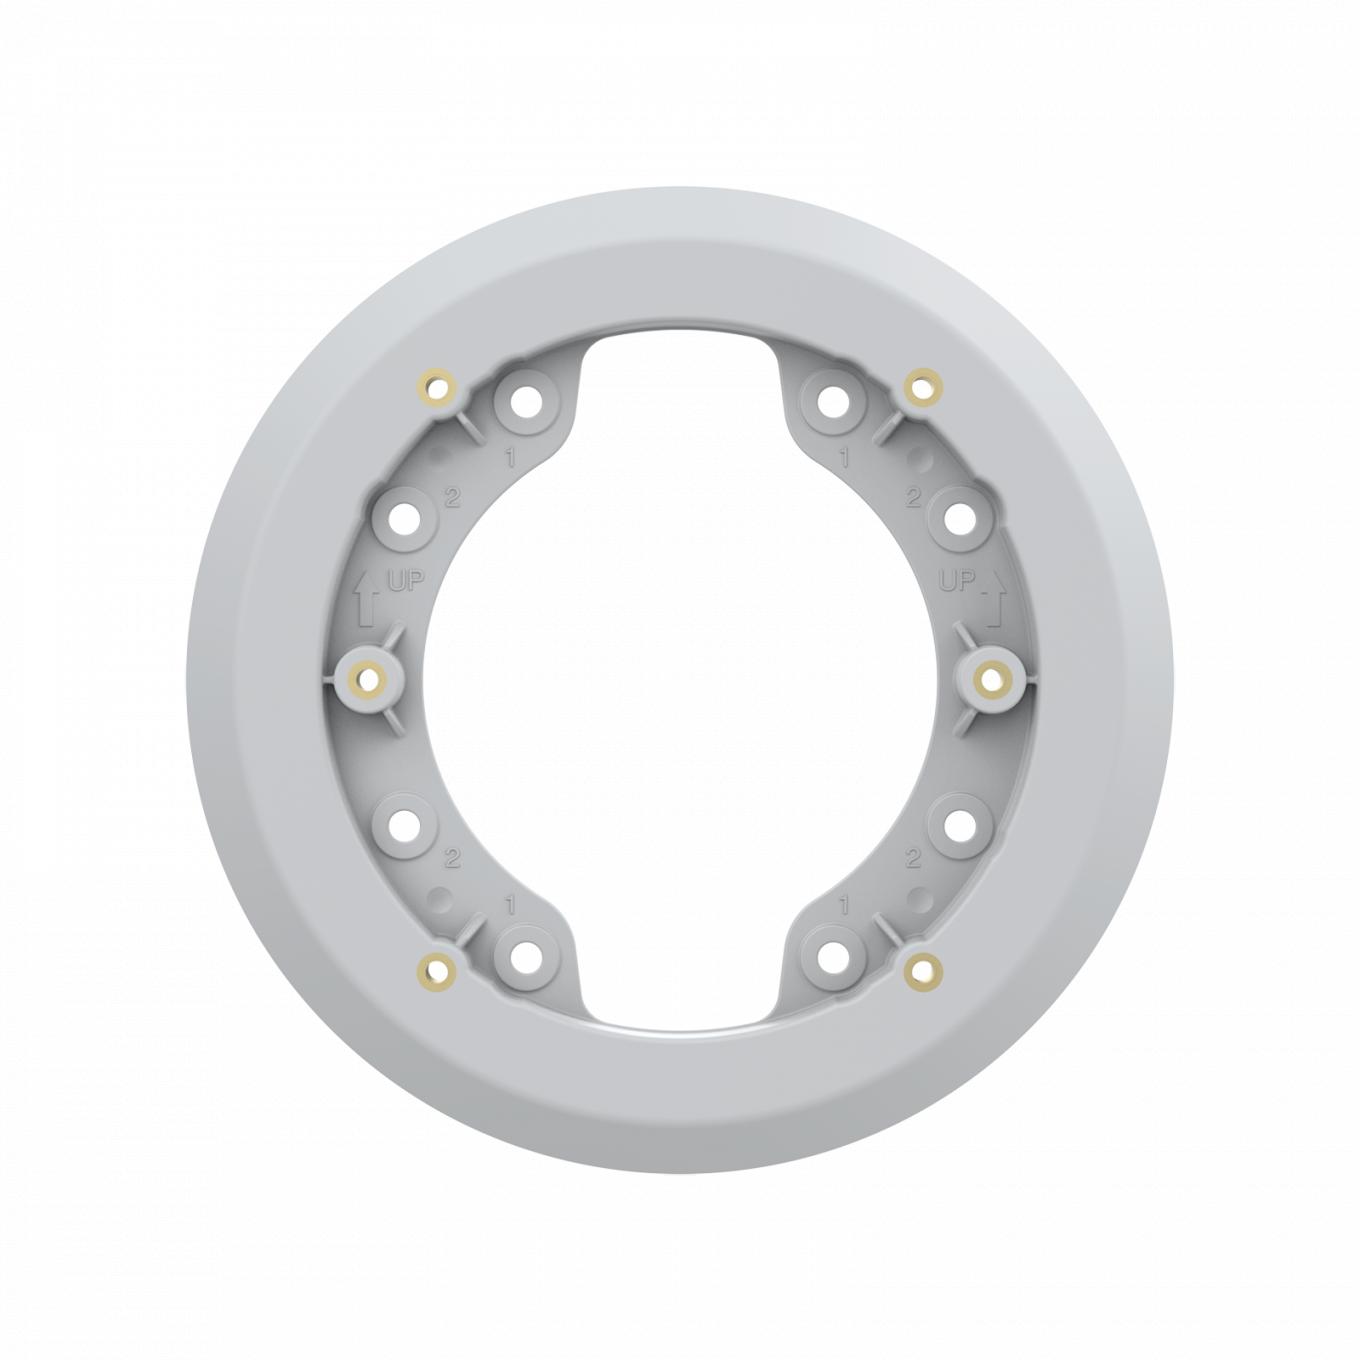 흰색 AXIS TP1601 Adapter Plate 액세서리를 정면에서 본 모습.